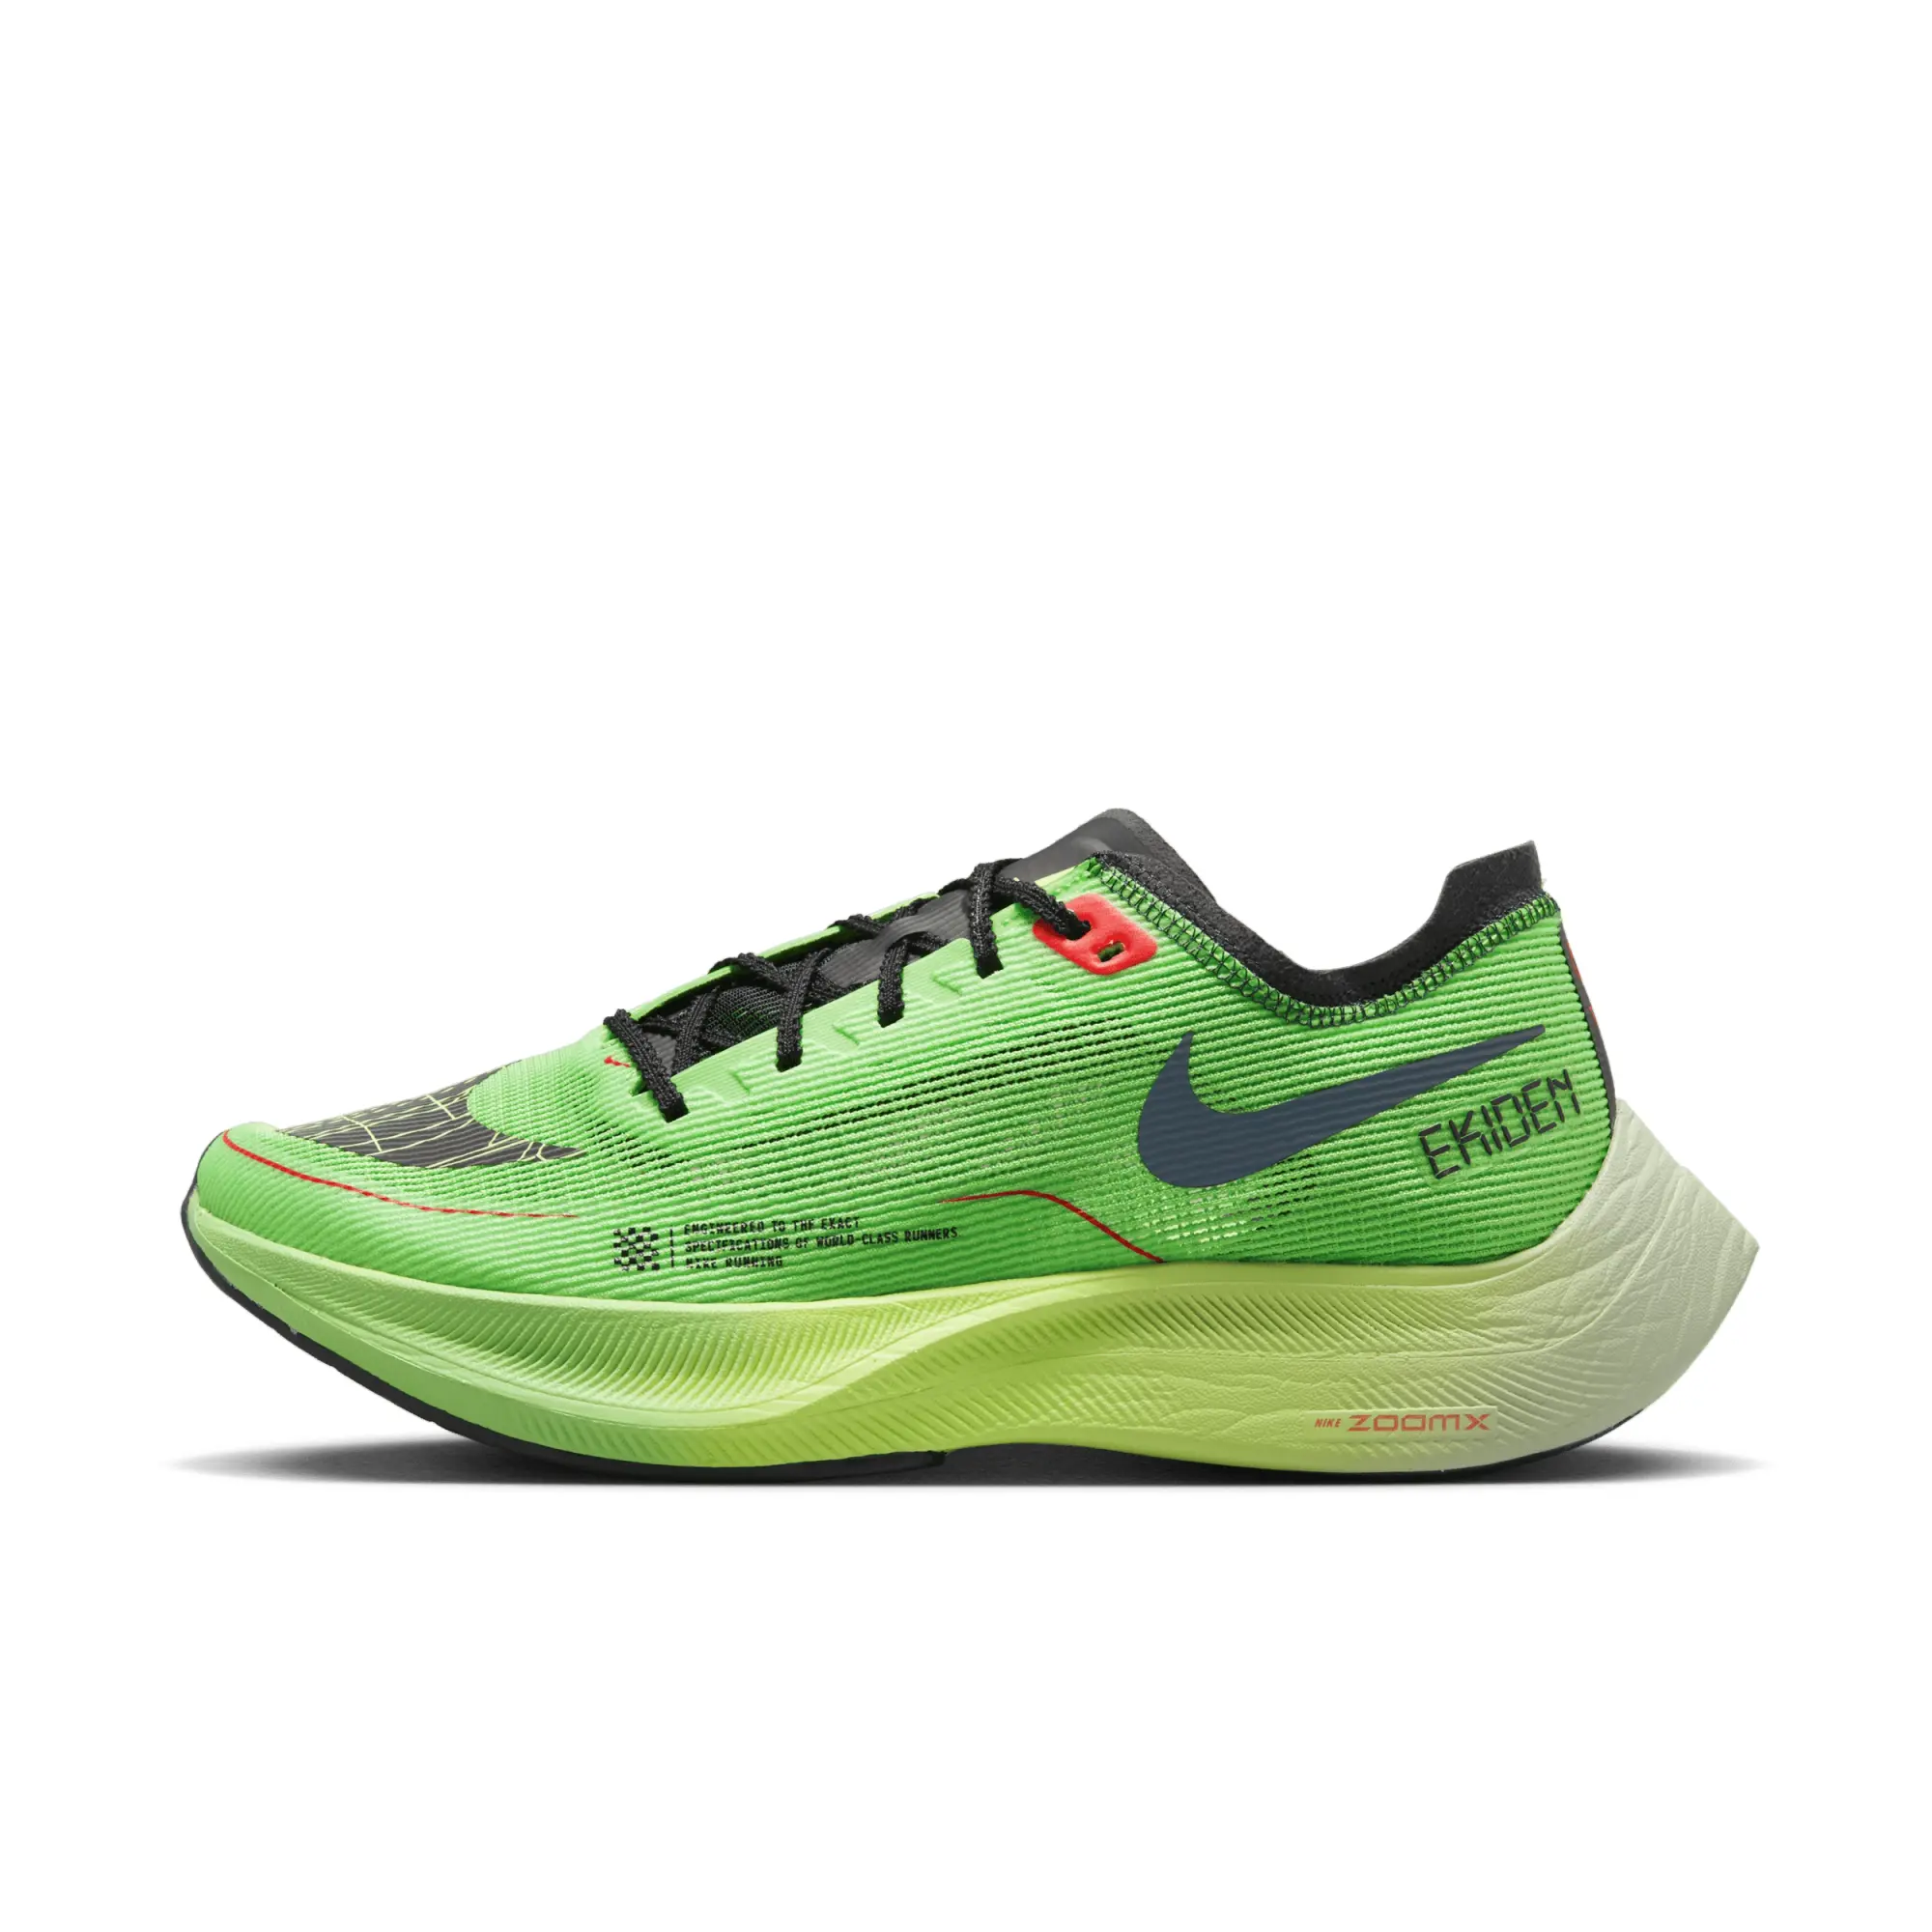 Nike Vaporfly 2 Men's Road Racing Shoes - Green